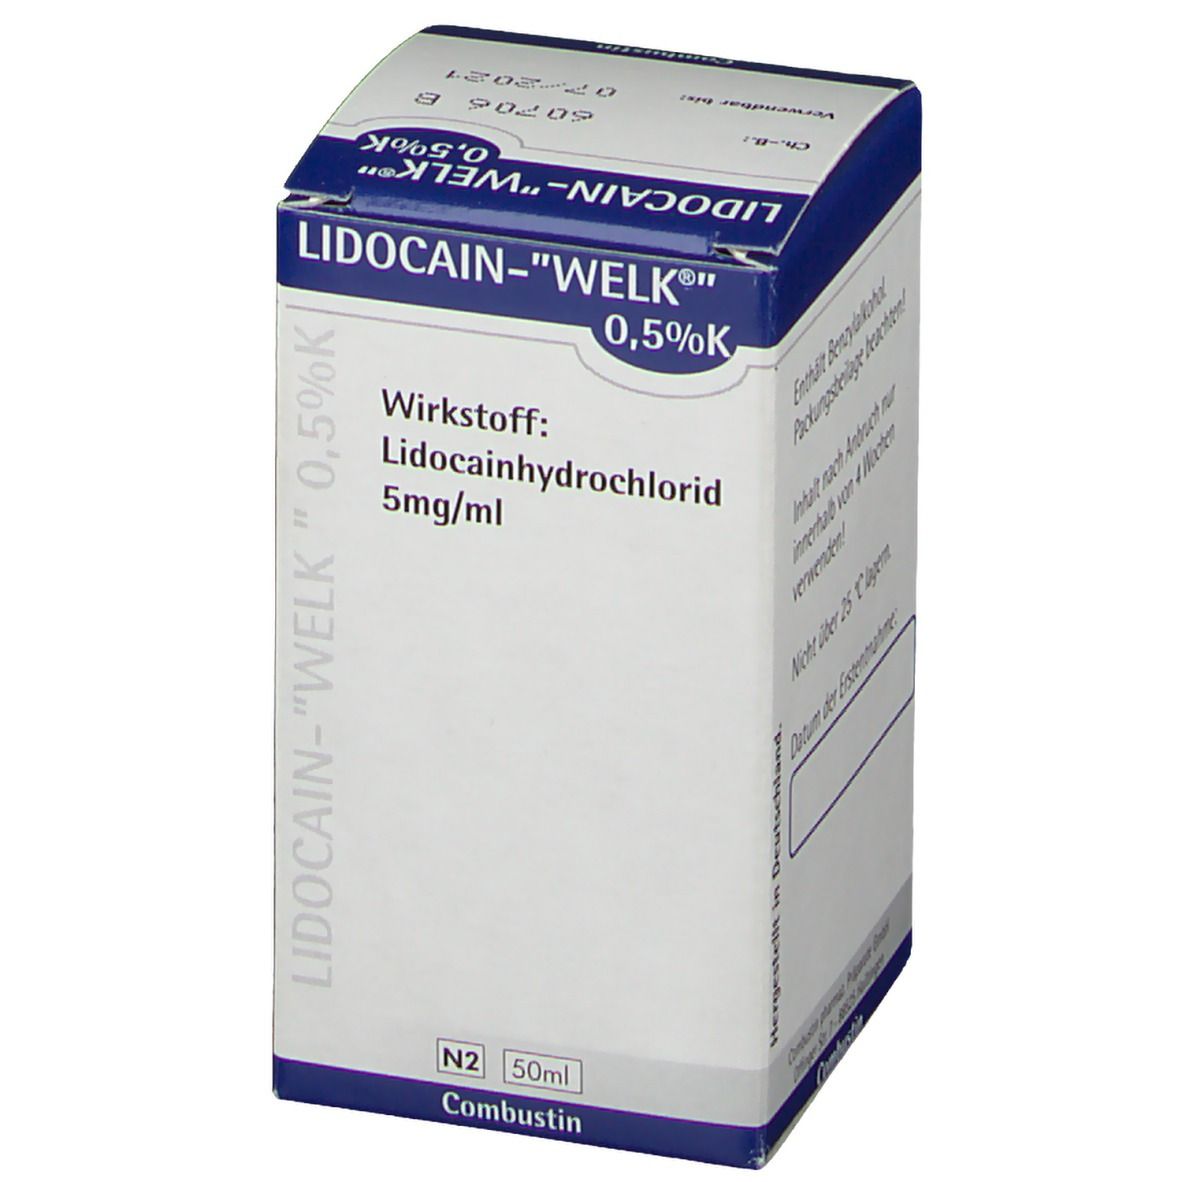 Lidocain-WELK® 0,5% K